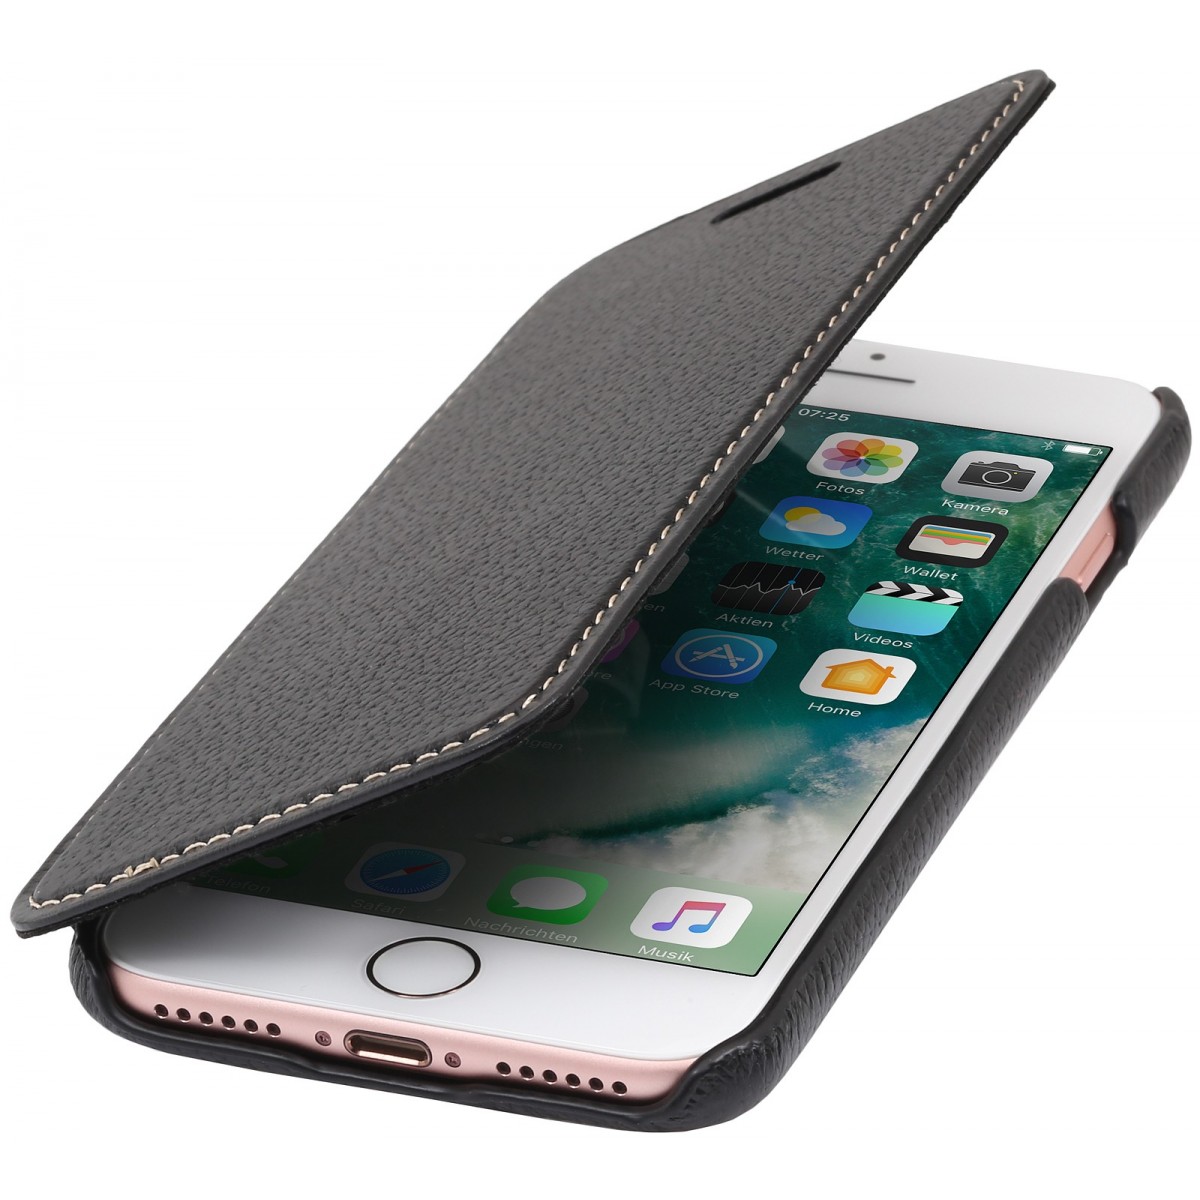 Etui iPhone 7 book type noir en cuir véritable sans clip de fermeture - Stilgut